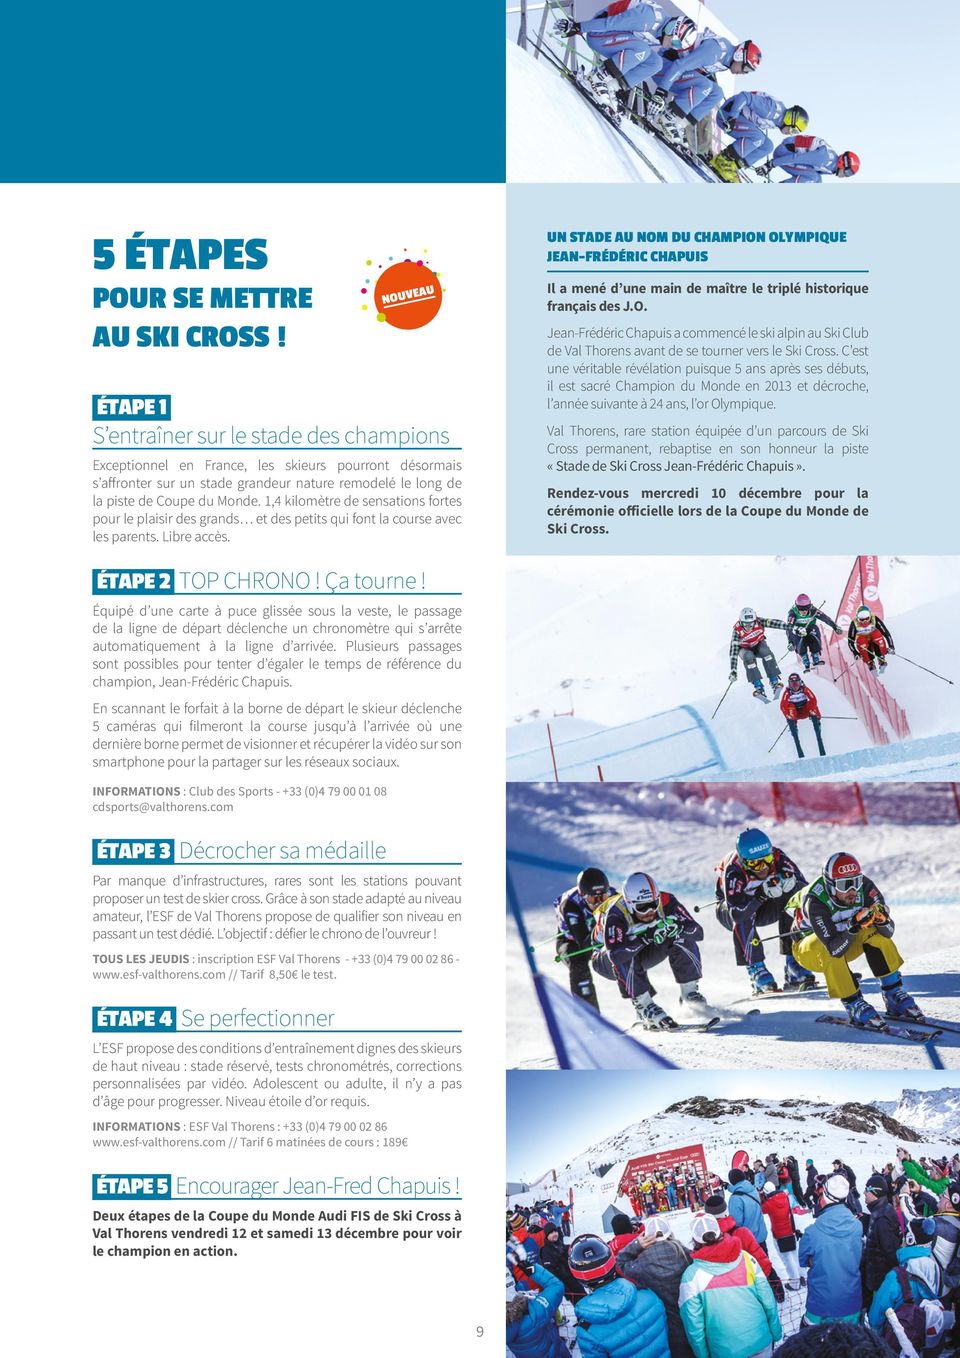 ÉTAPE 1 S entraîner sur le stade des champions Val Thorens, rare station équipée d un parcours de Ski Cross permanent, rebaptise en son honneur la piste «Stade de Ski Cross Jean-Frédéric Chapuis».